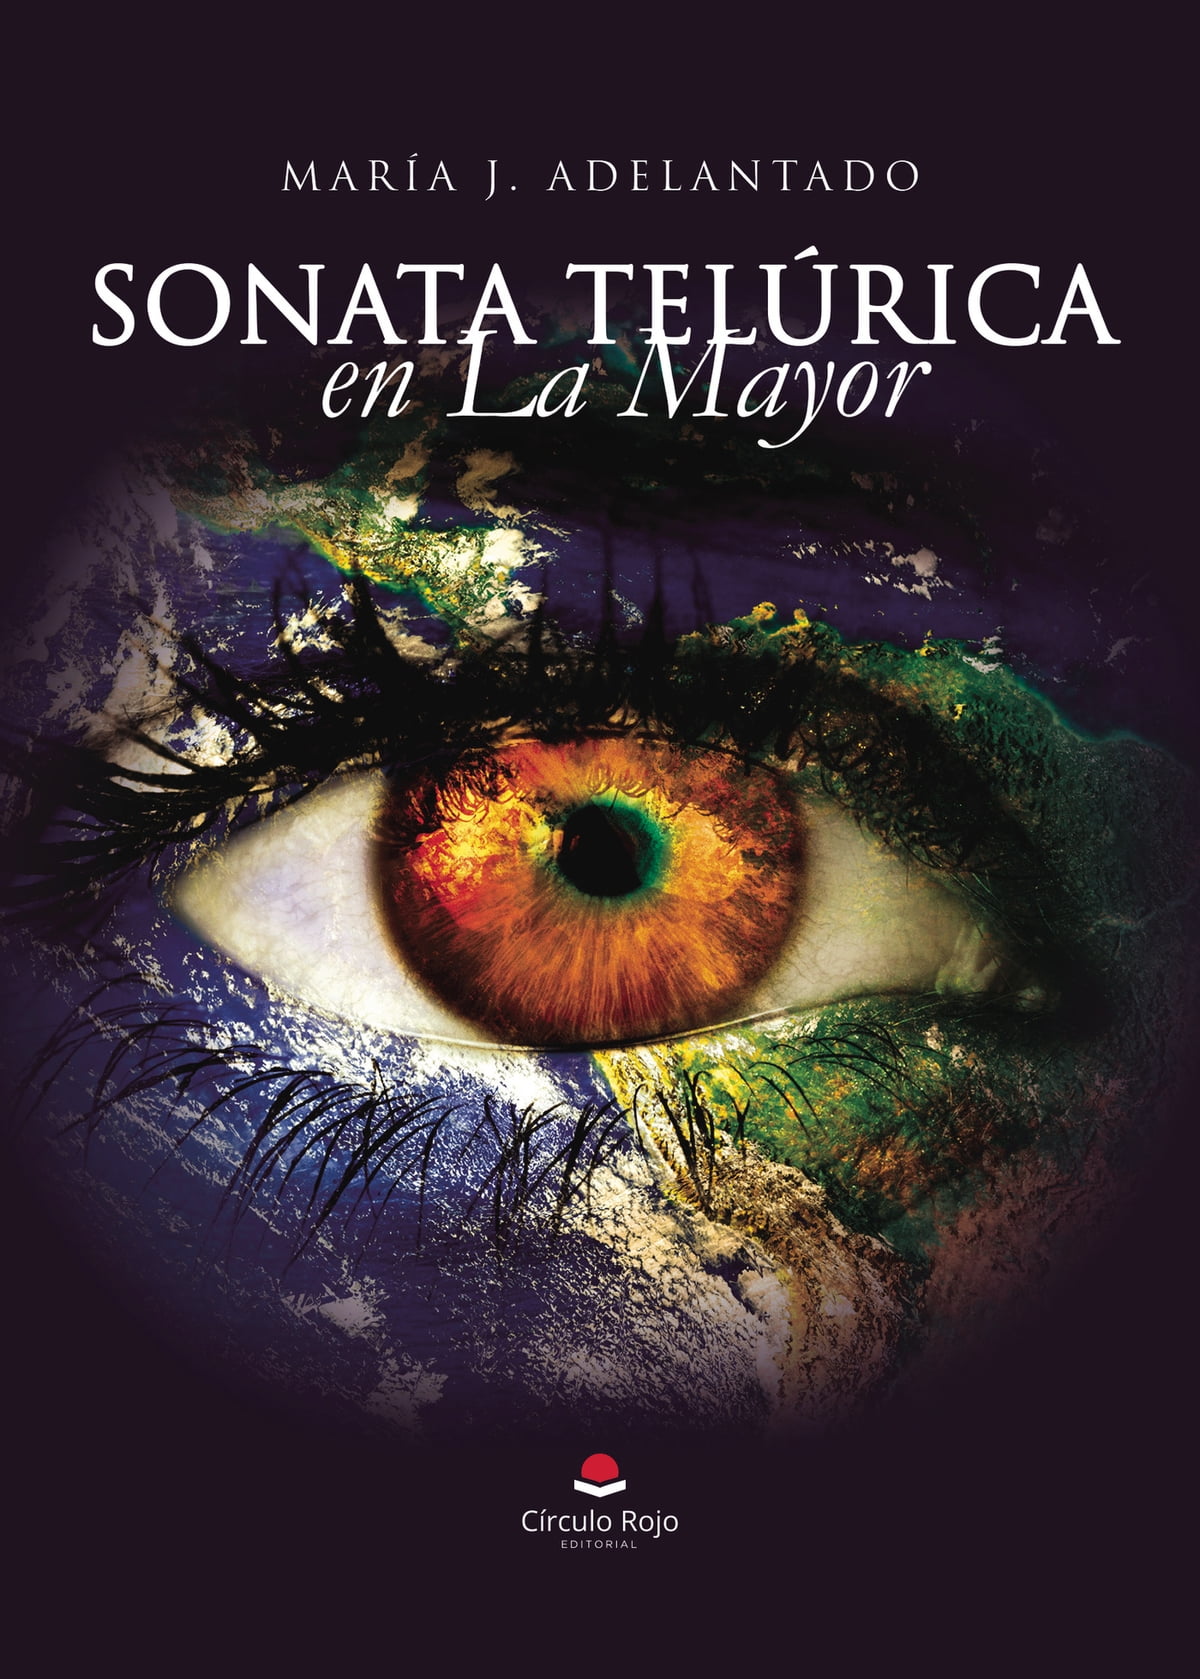 Una charla con María J. Adelantado, autora de la obra “Sonata Telúrica en La Mayor”.